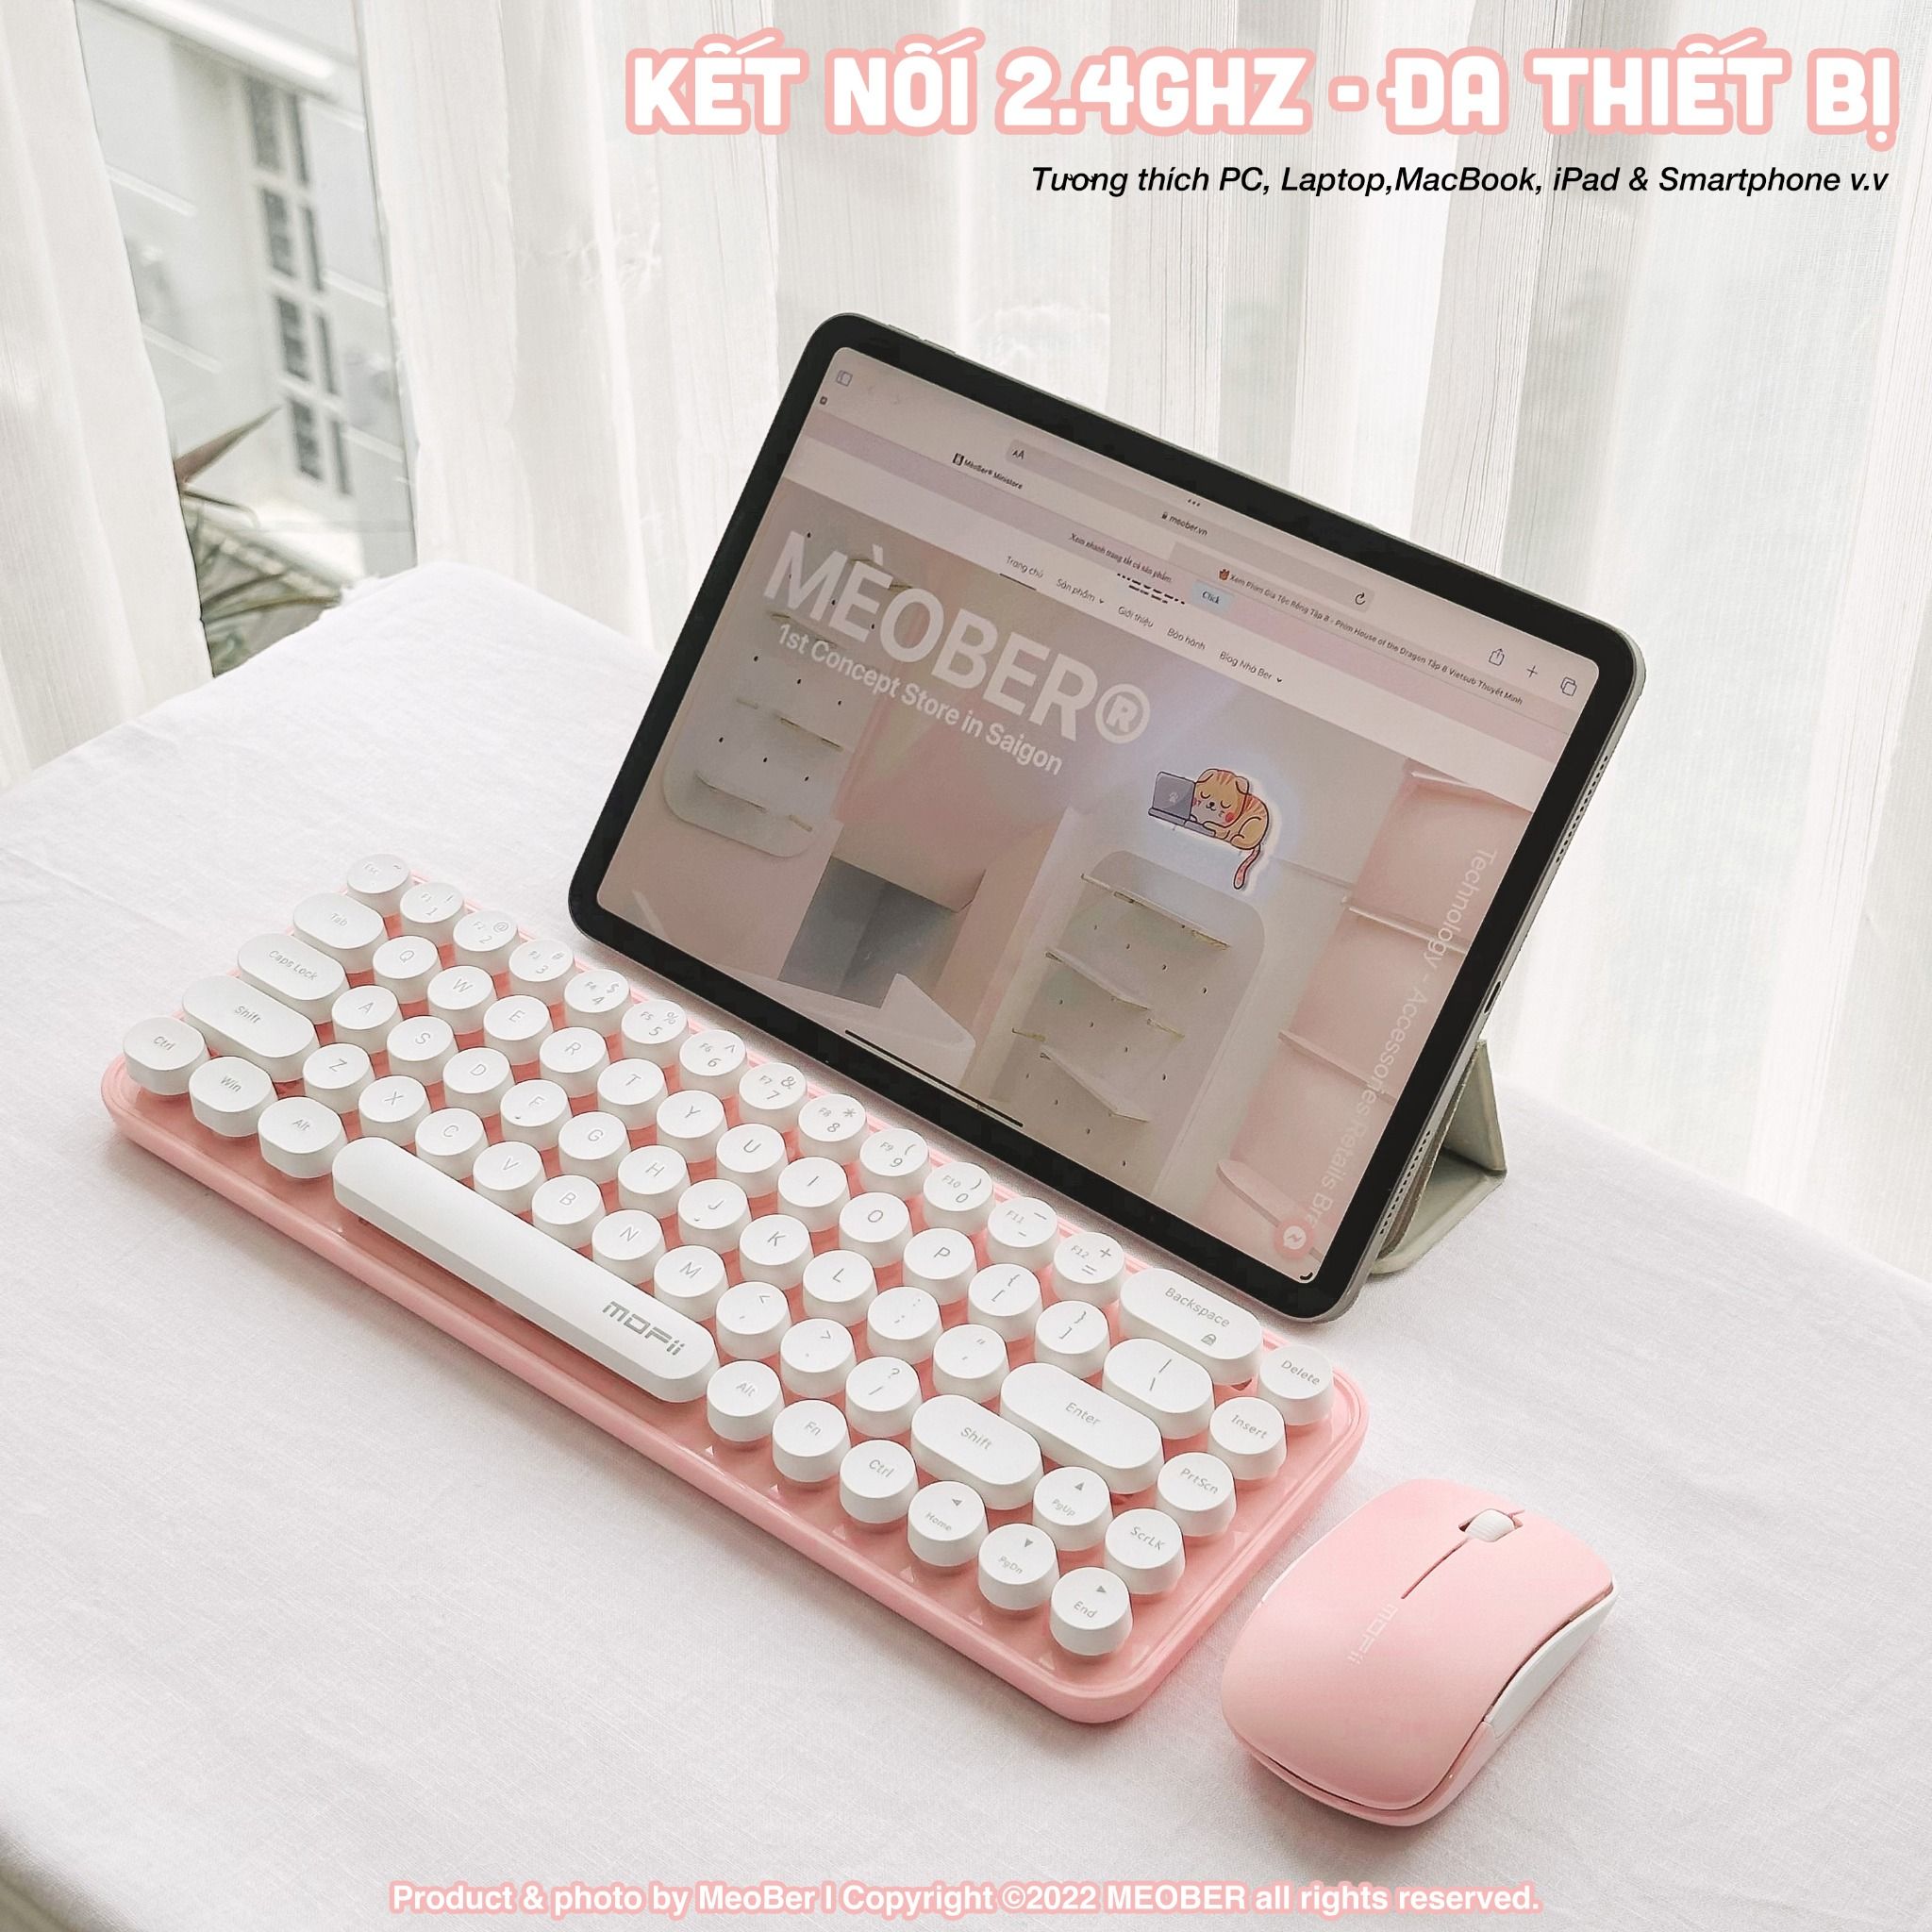  Bộ bàn phím không dây & chuột Silent MOFII Candy Mini Basic dành cho Laptop, iPad, PC v.v 